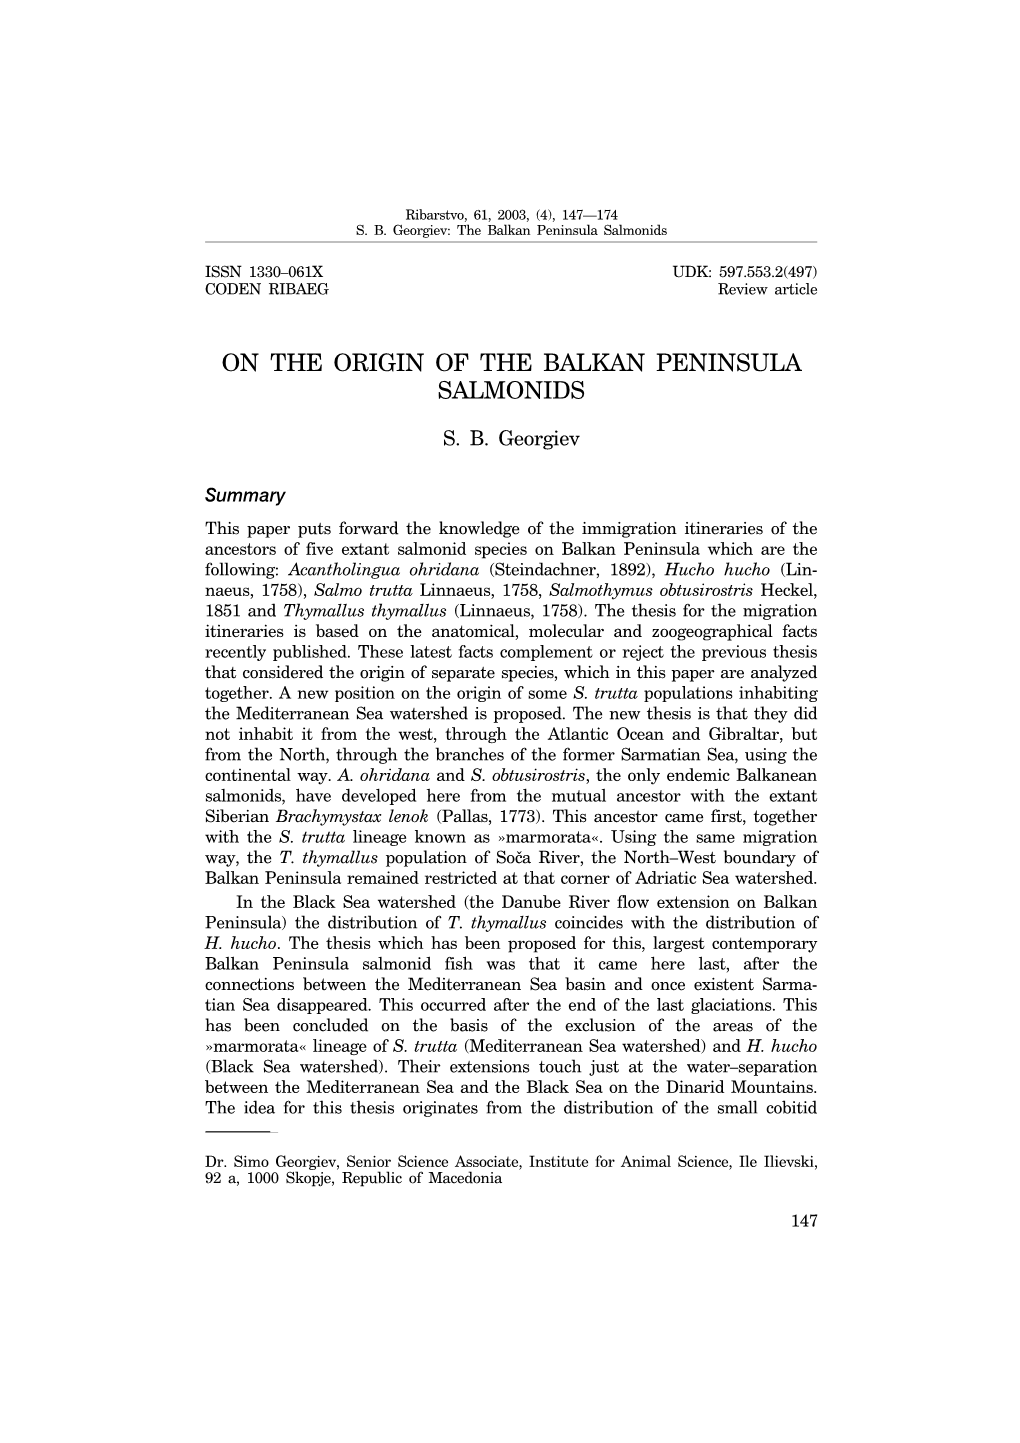 On the Origin of the Balkan Penins8la Salmonids